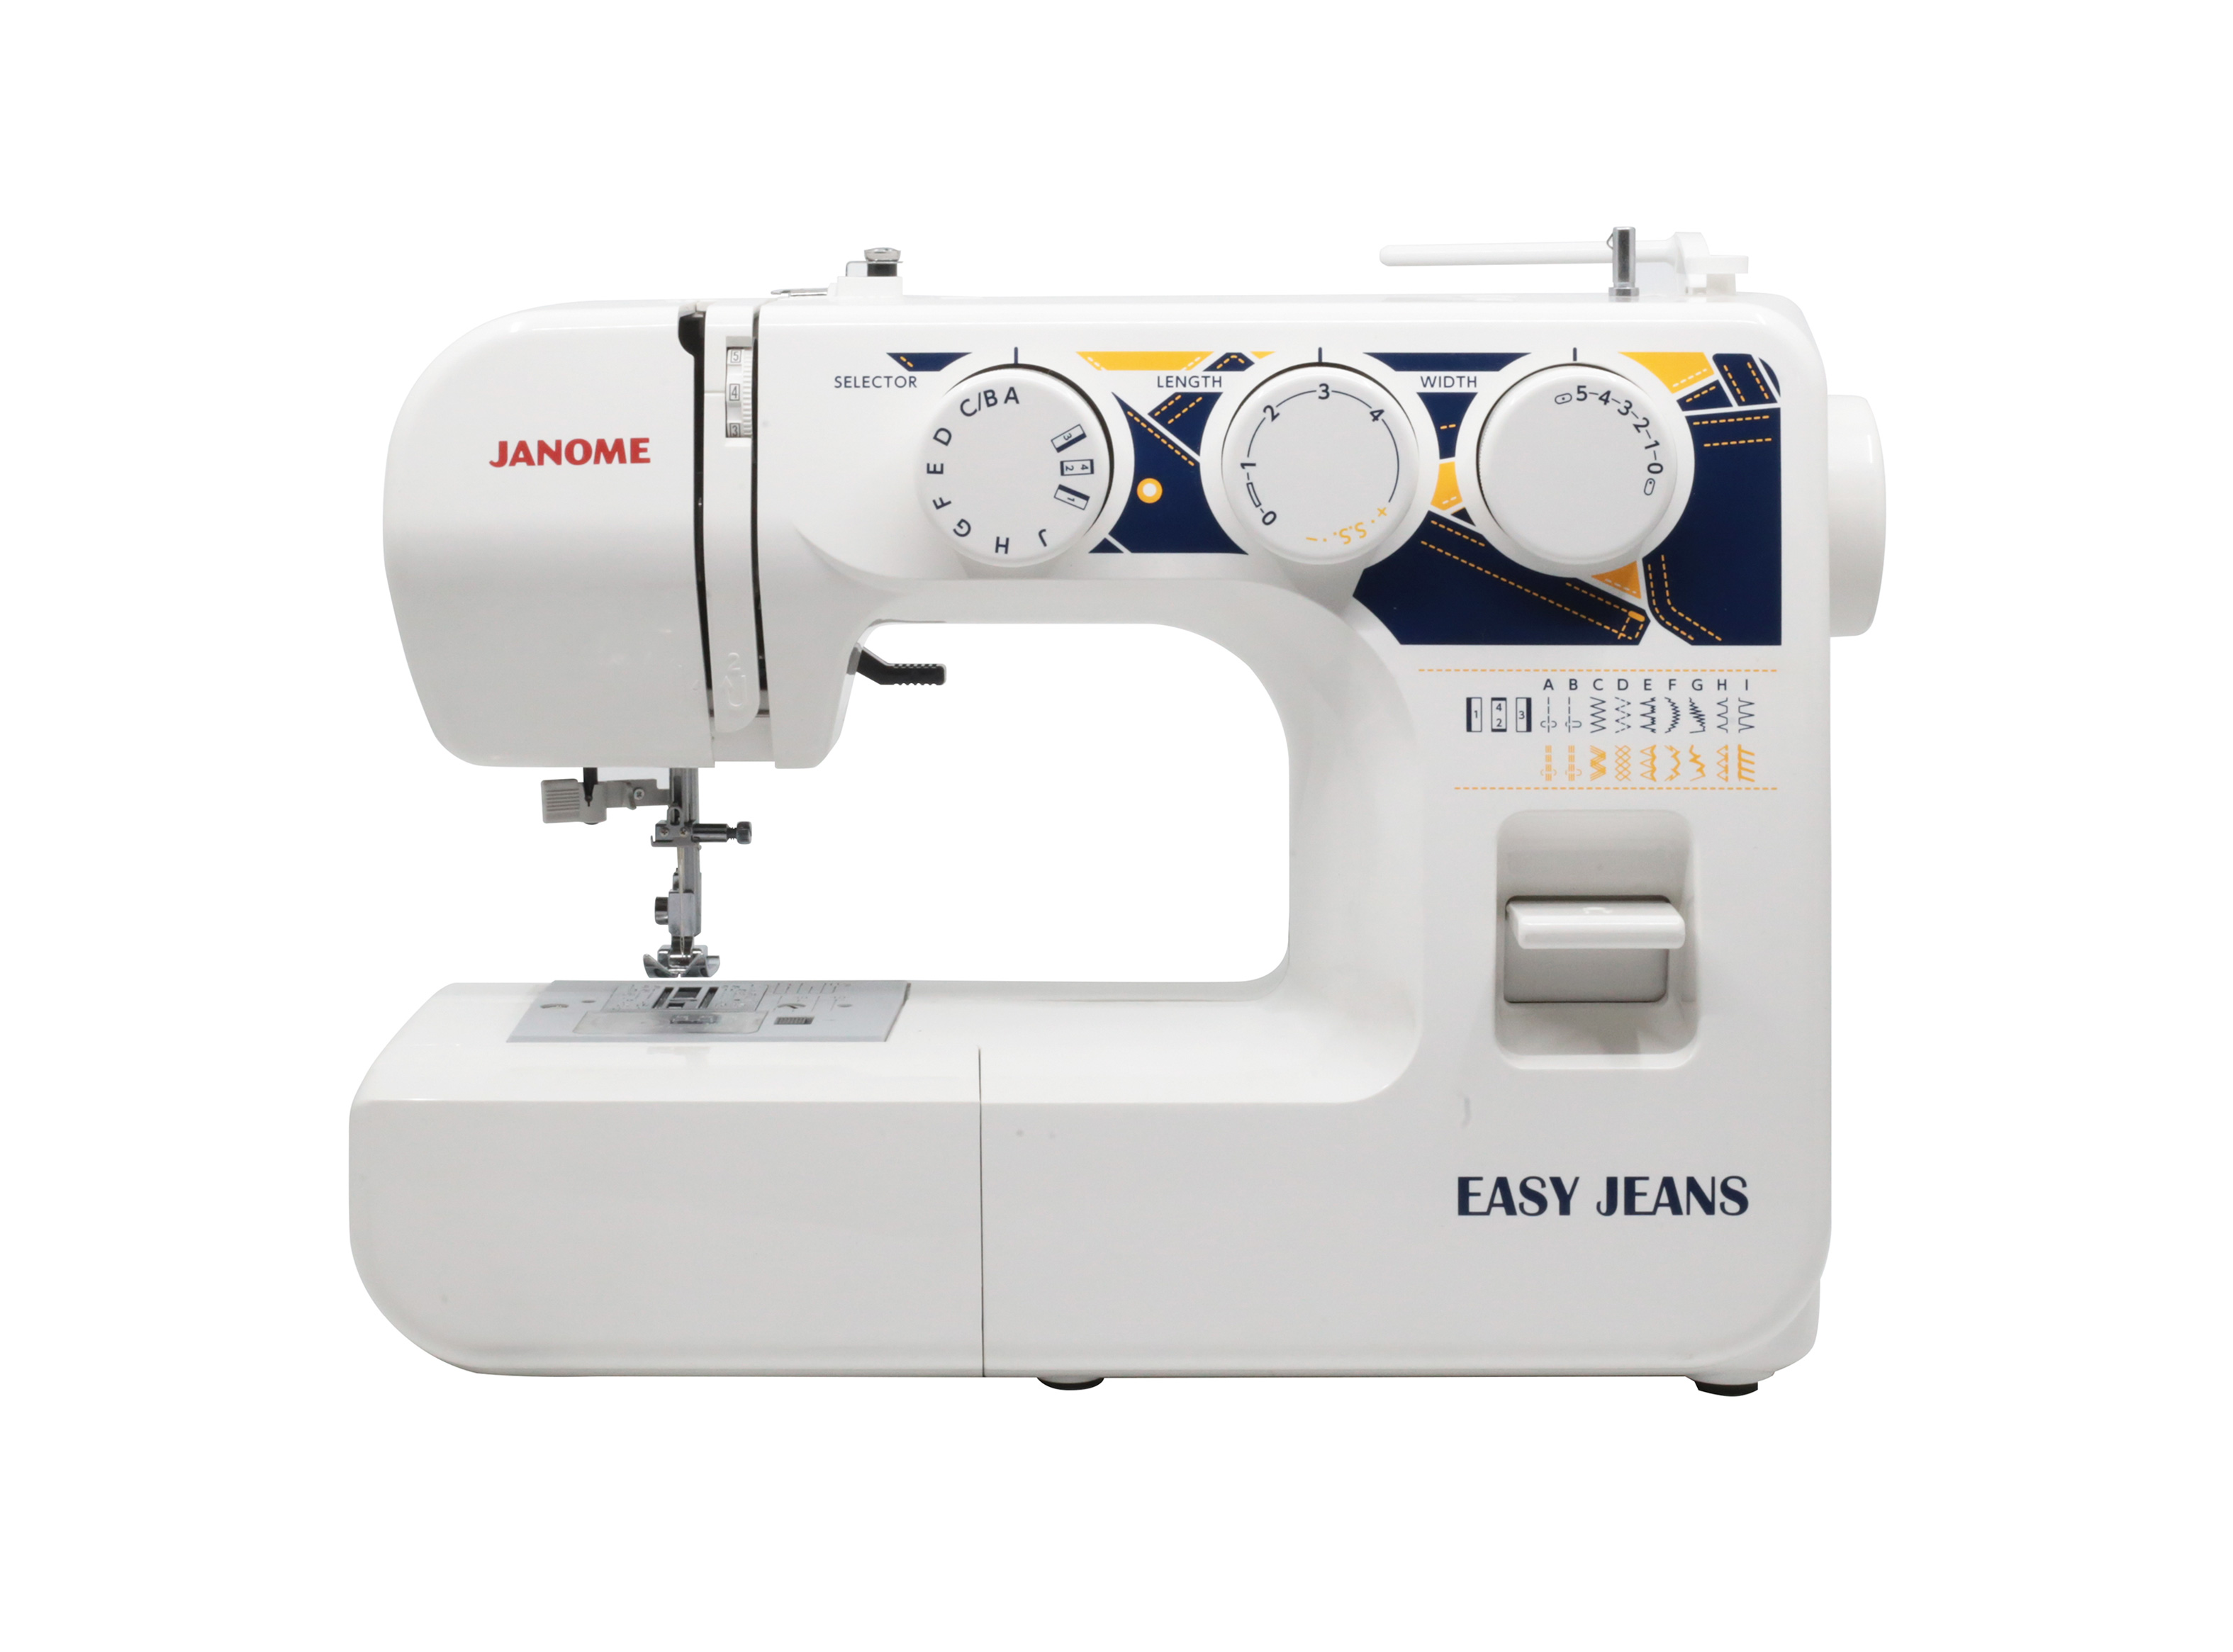 Maquina de coser mecanica janome 3008